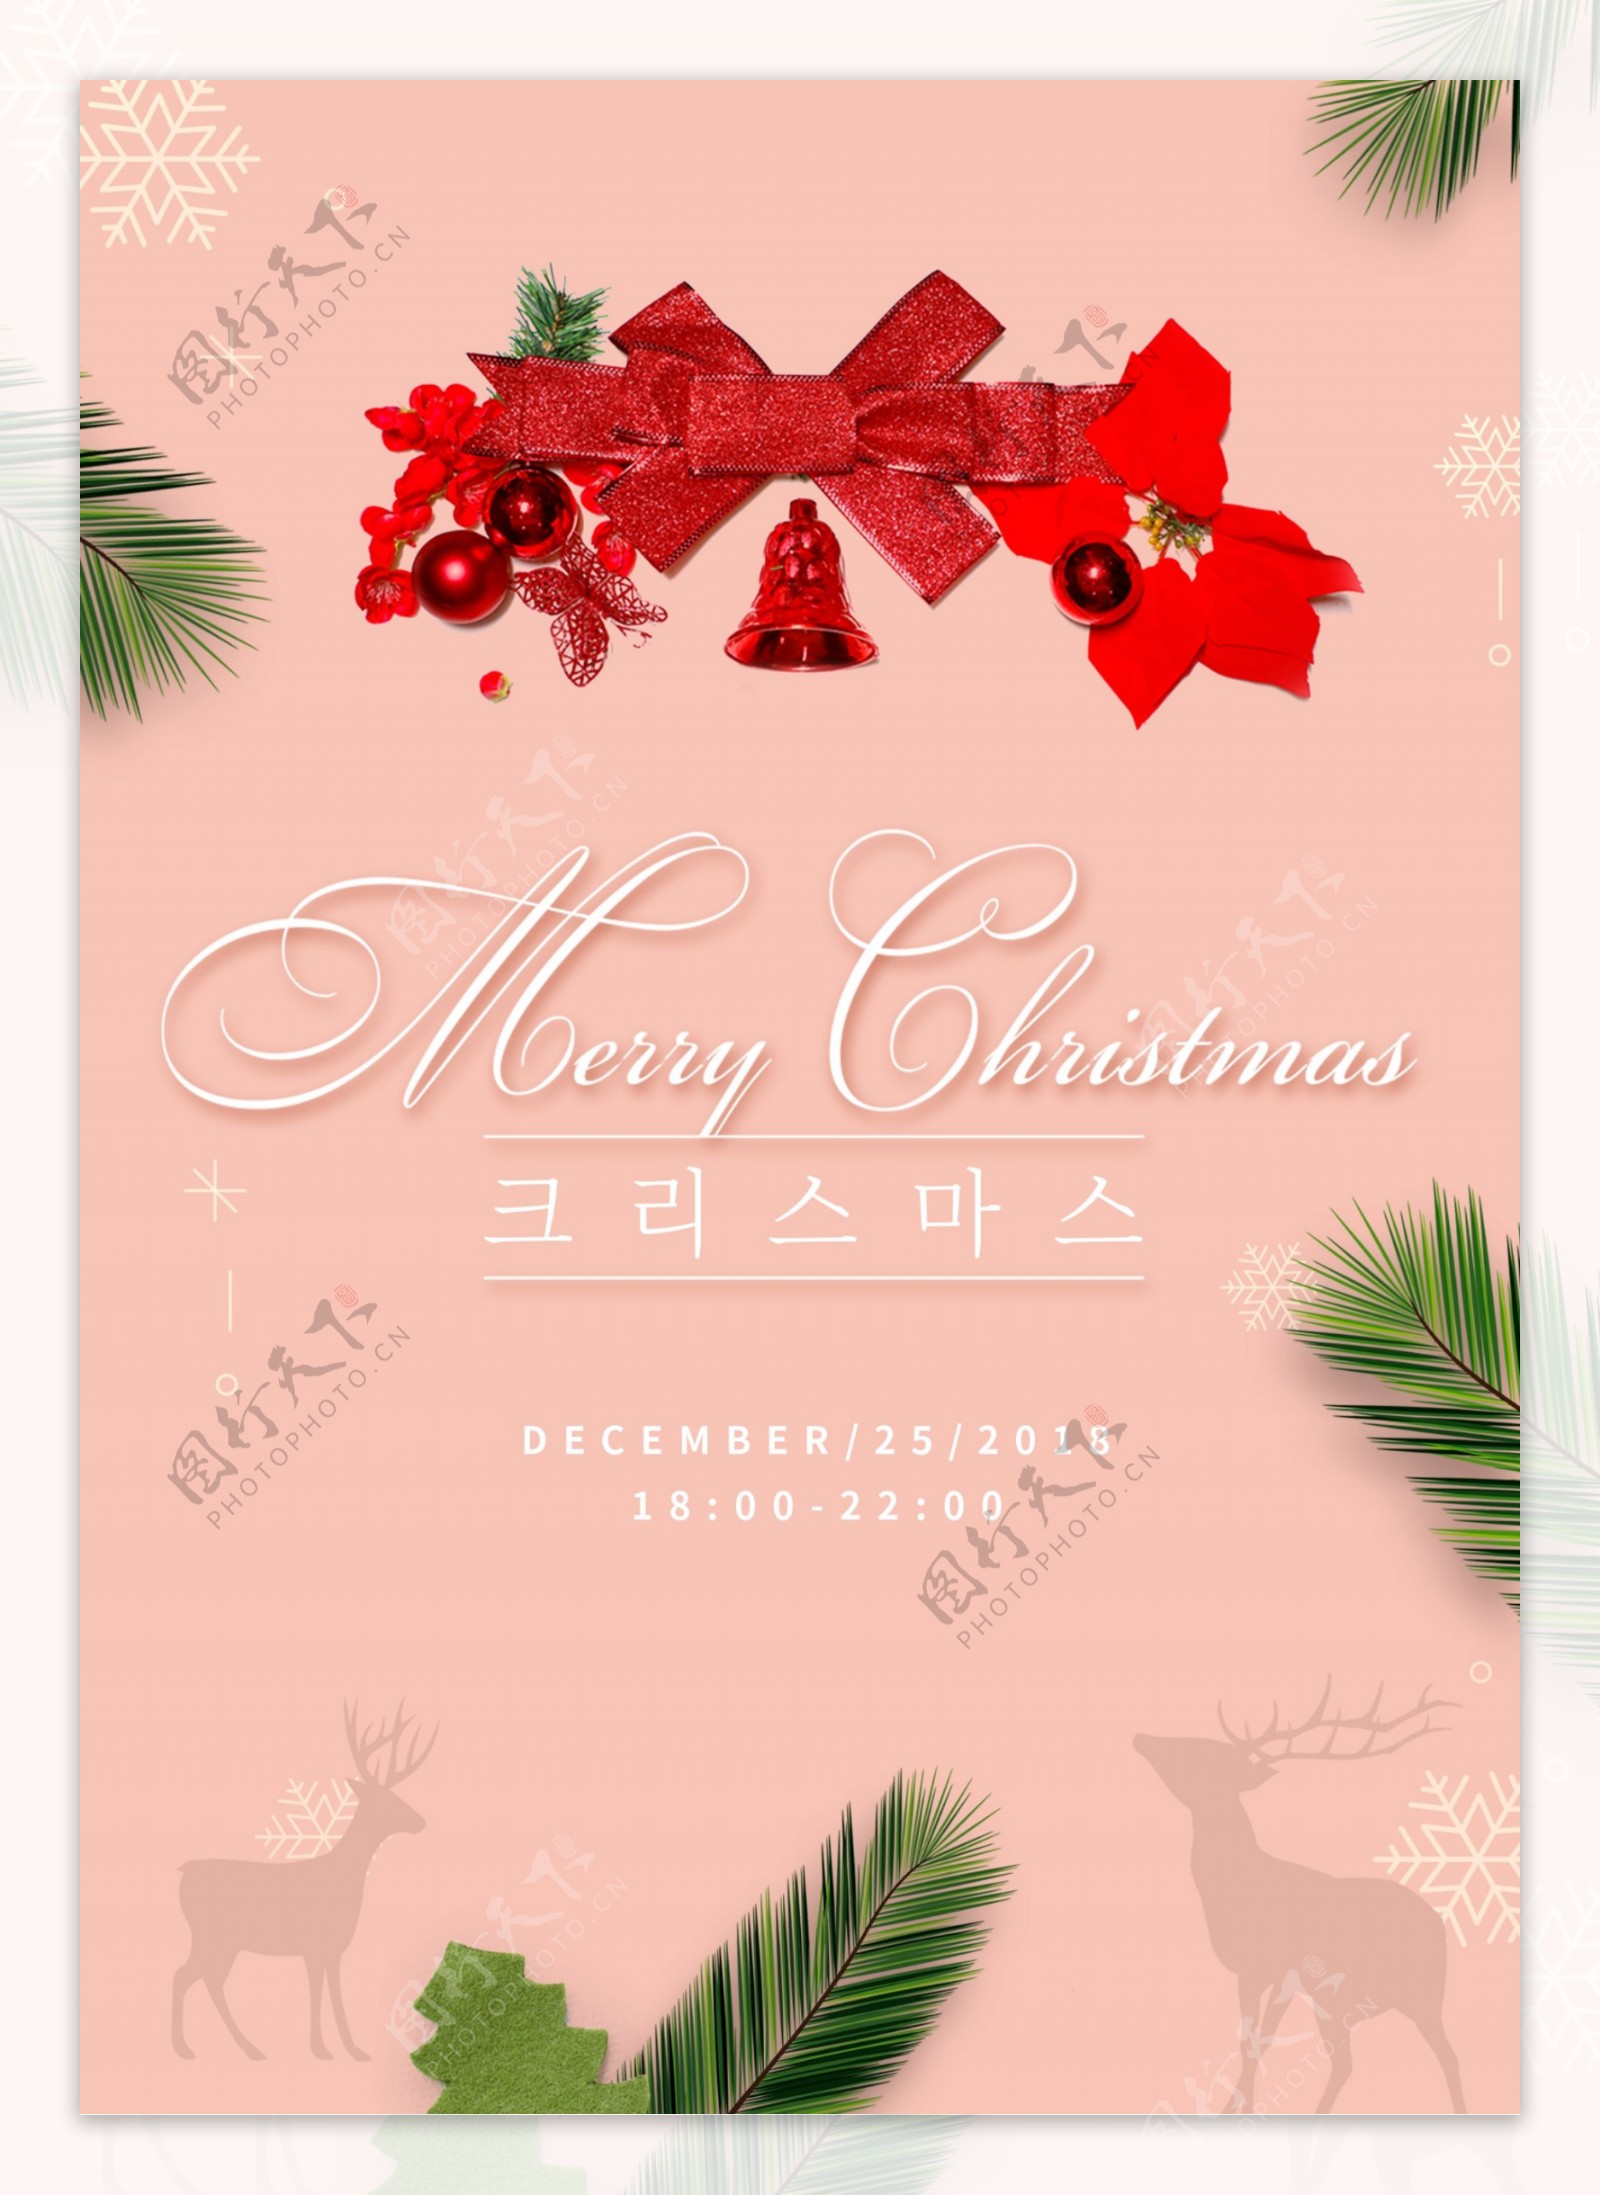 粉红色可爱的圣诞树海报设计